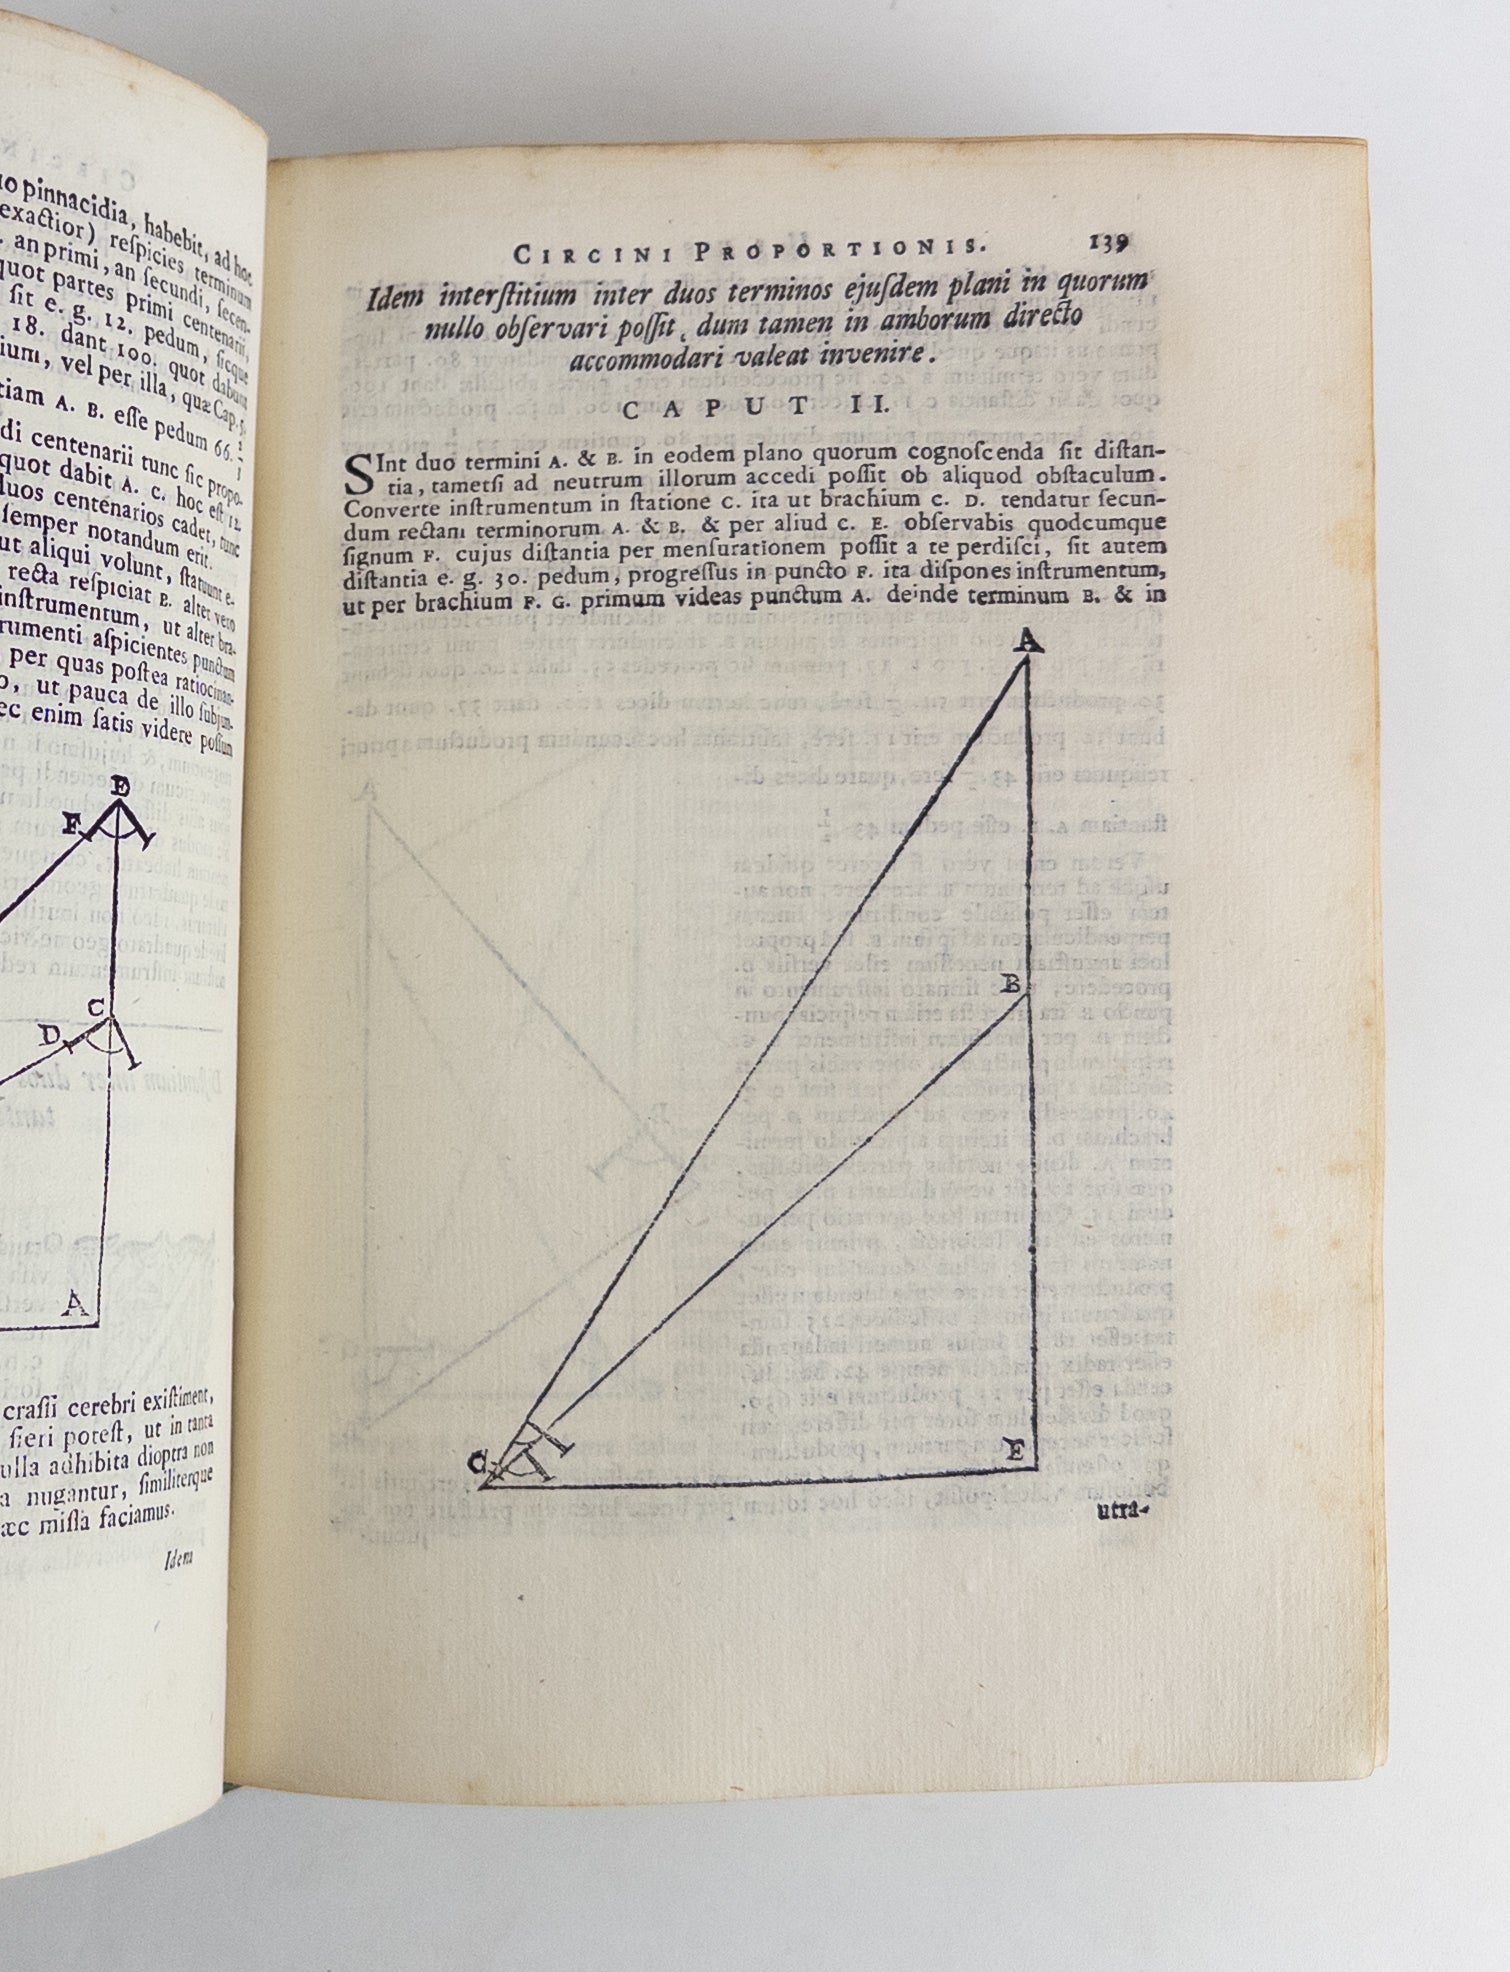 Product Image for OPERE DI GALILEO GALILEI NOBILE FIORENTINO [Three Volumes]